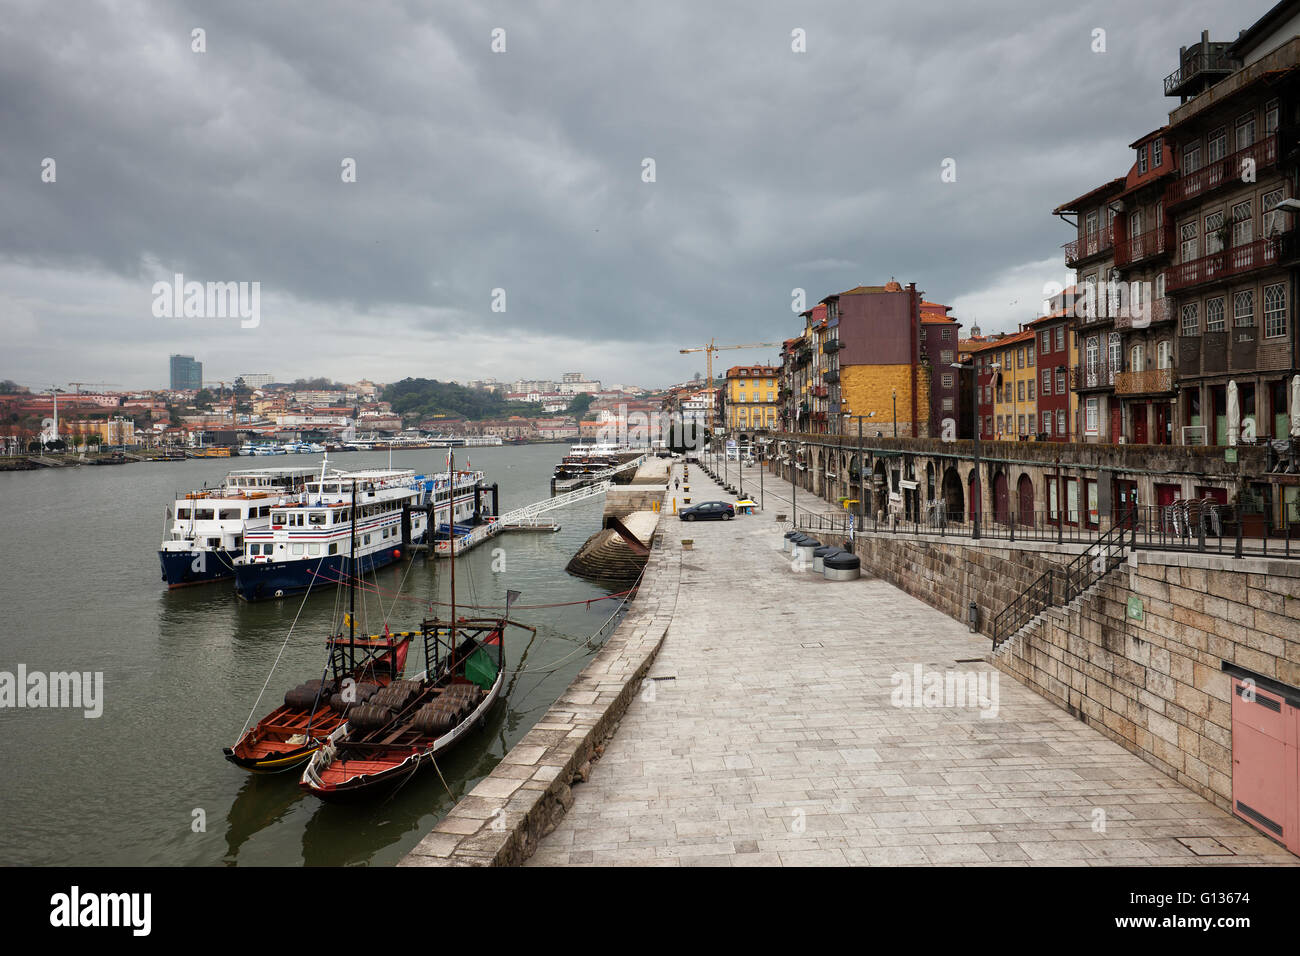 La ciudad de Oporto, Portugal (Oporto), el casco antiguo de la ciudad,  excursión, crucero y Rabelo tradicionales botes en el río Duero, promenade,  Esplanade, alle Fotografía de stock - Alamy